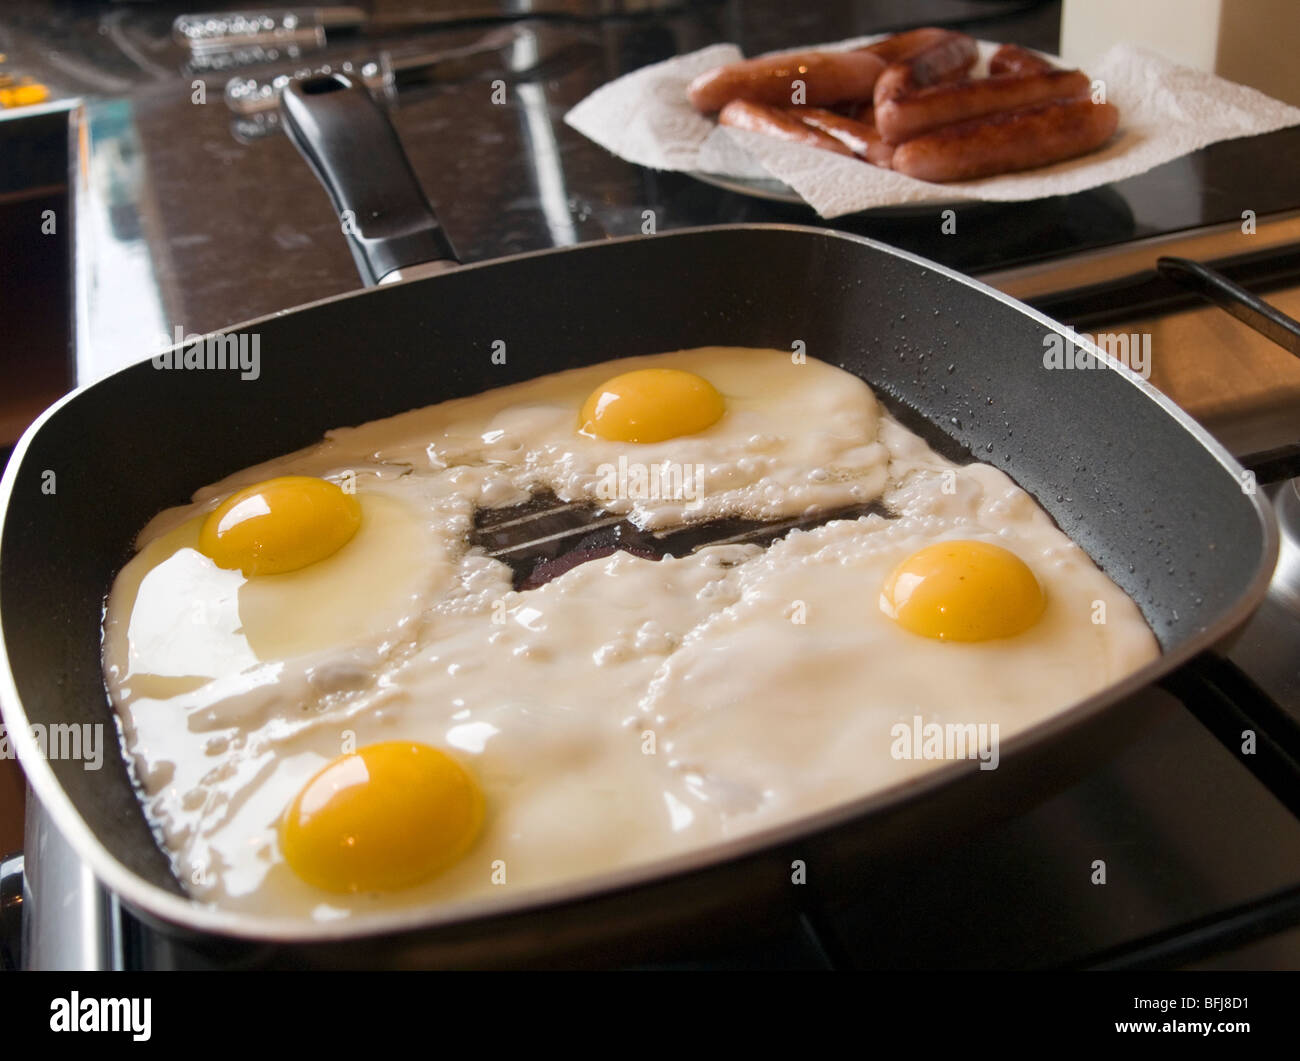 https://c8.alamy.com/comp/BFJ8D1/a-pan-of-fried-eggs-BFJ8D1.jpg